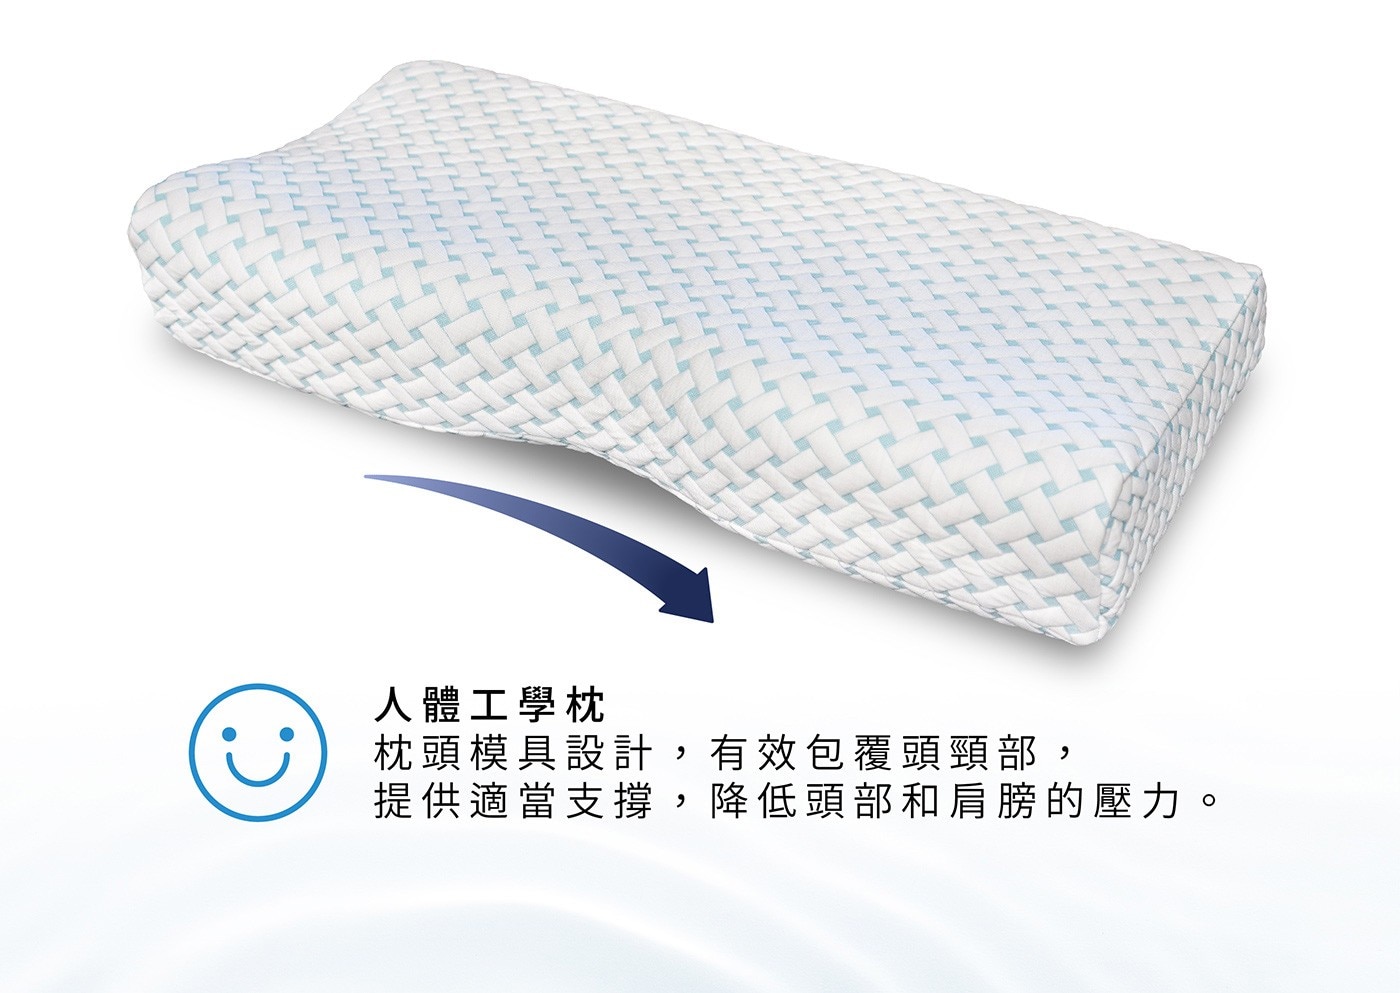 Reverie 親水舒眠人體工學枕 親水材質，自帶涼感恆溫效果 軟硬度不易隨季節變化而有巨大差異。